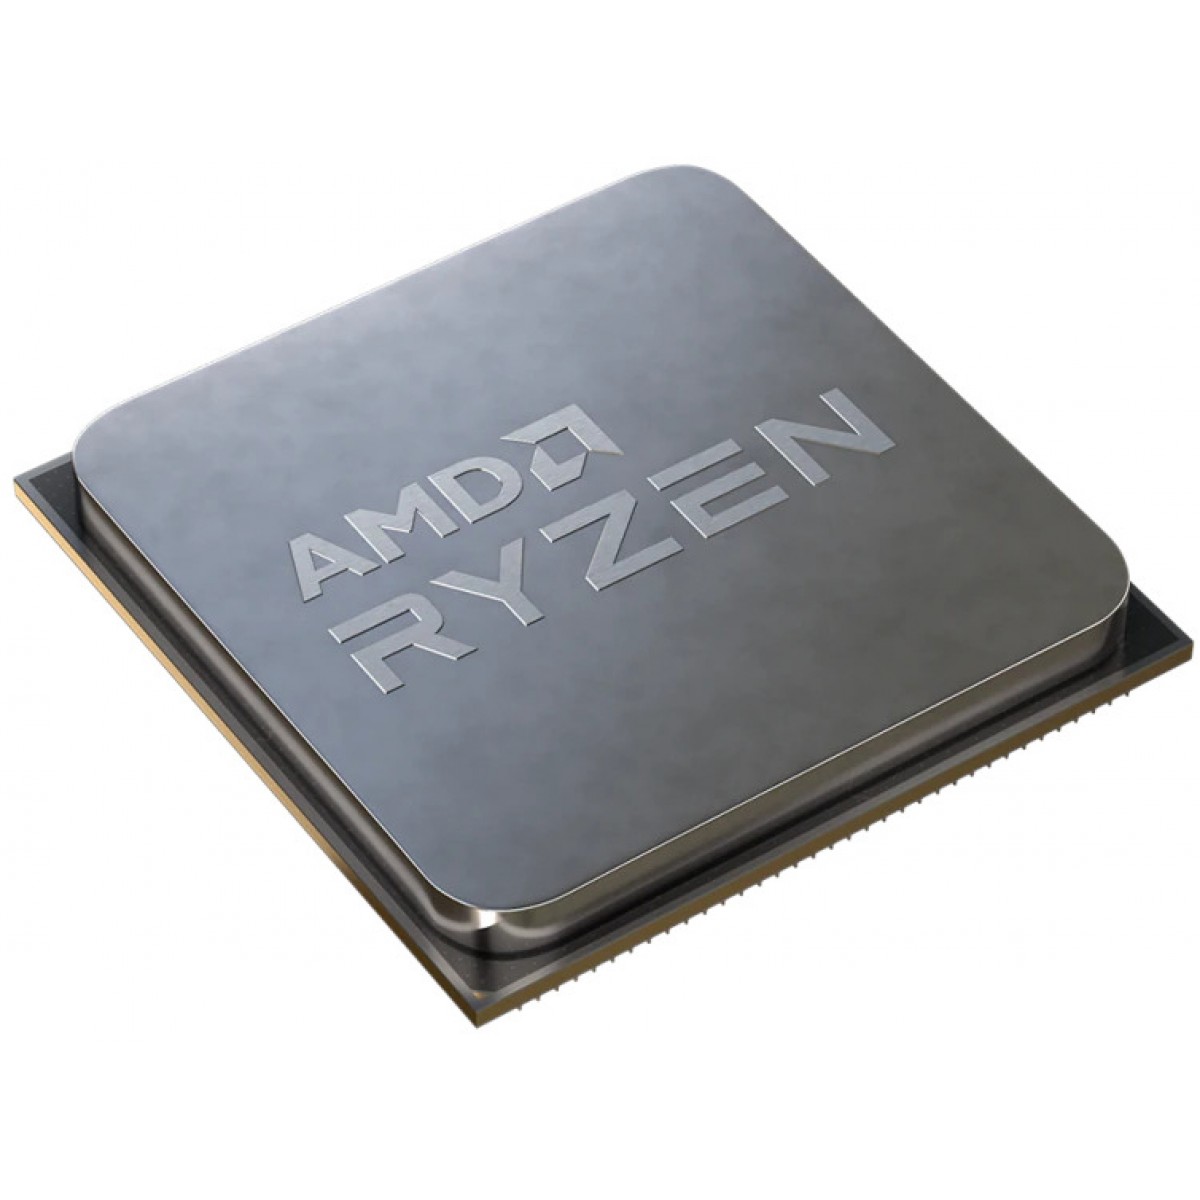 Processador AMD Ryzen 7 5800X 3.8GHz (4.7GHz Turbo), 8-Cores 16-Threads, AM4, Sem Cooler